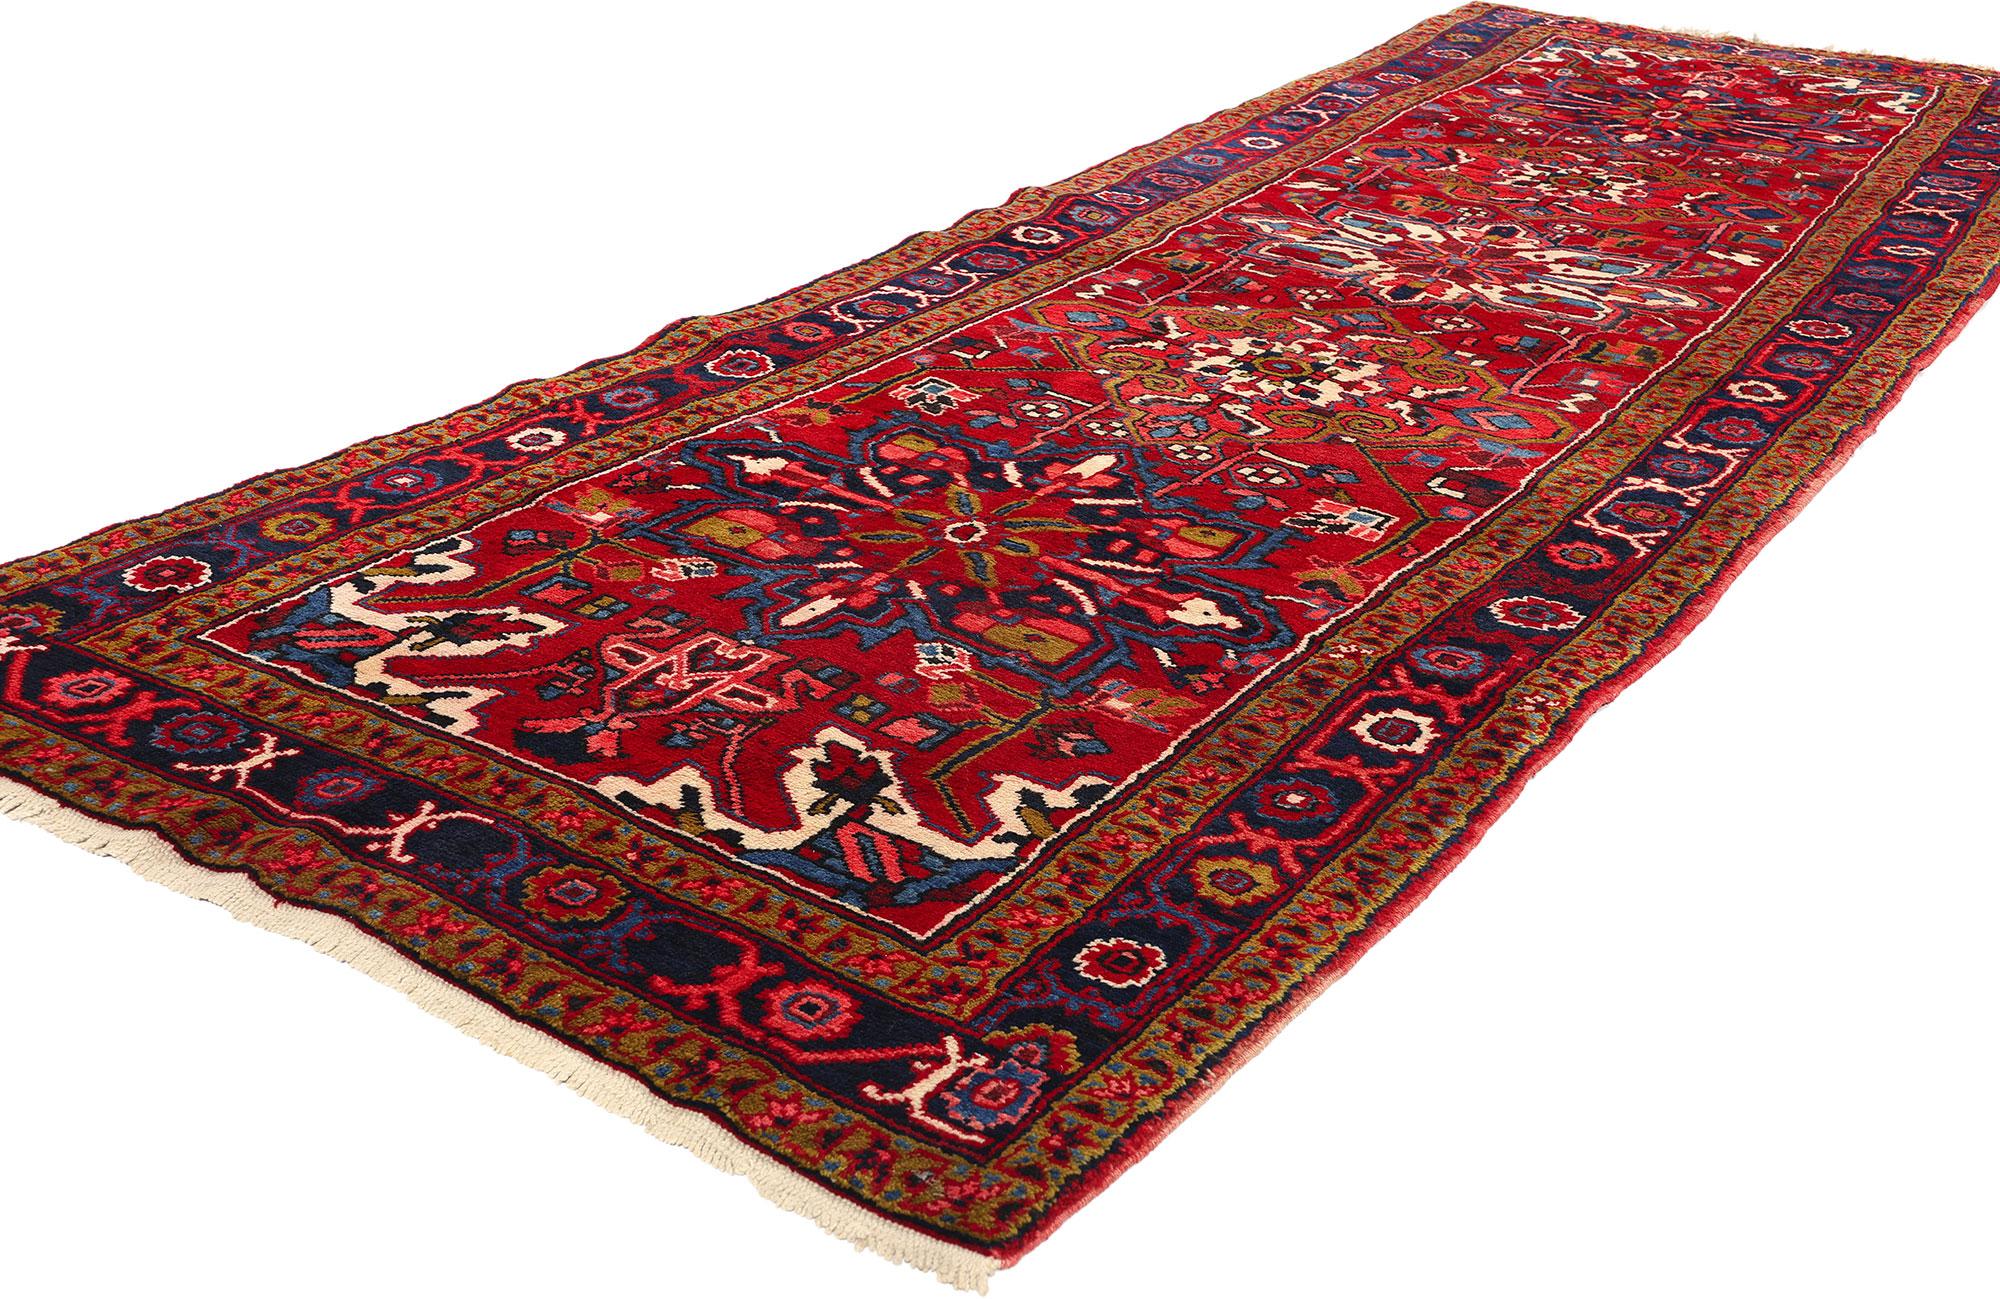 60247 Vintage Persian Heriz Rug Runner, 03'09 x 11'06. Persische Heriz-Teppichläufer sind eine spezielle Art von Heriz-Teppichen, die in einem langen und schmalen Format gefertigt werden und sich ideal zur Verschönerung von Fluren, Treppenhäusern